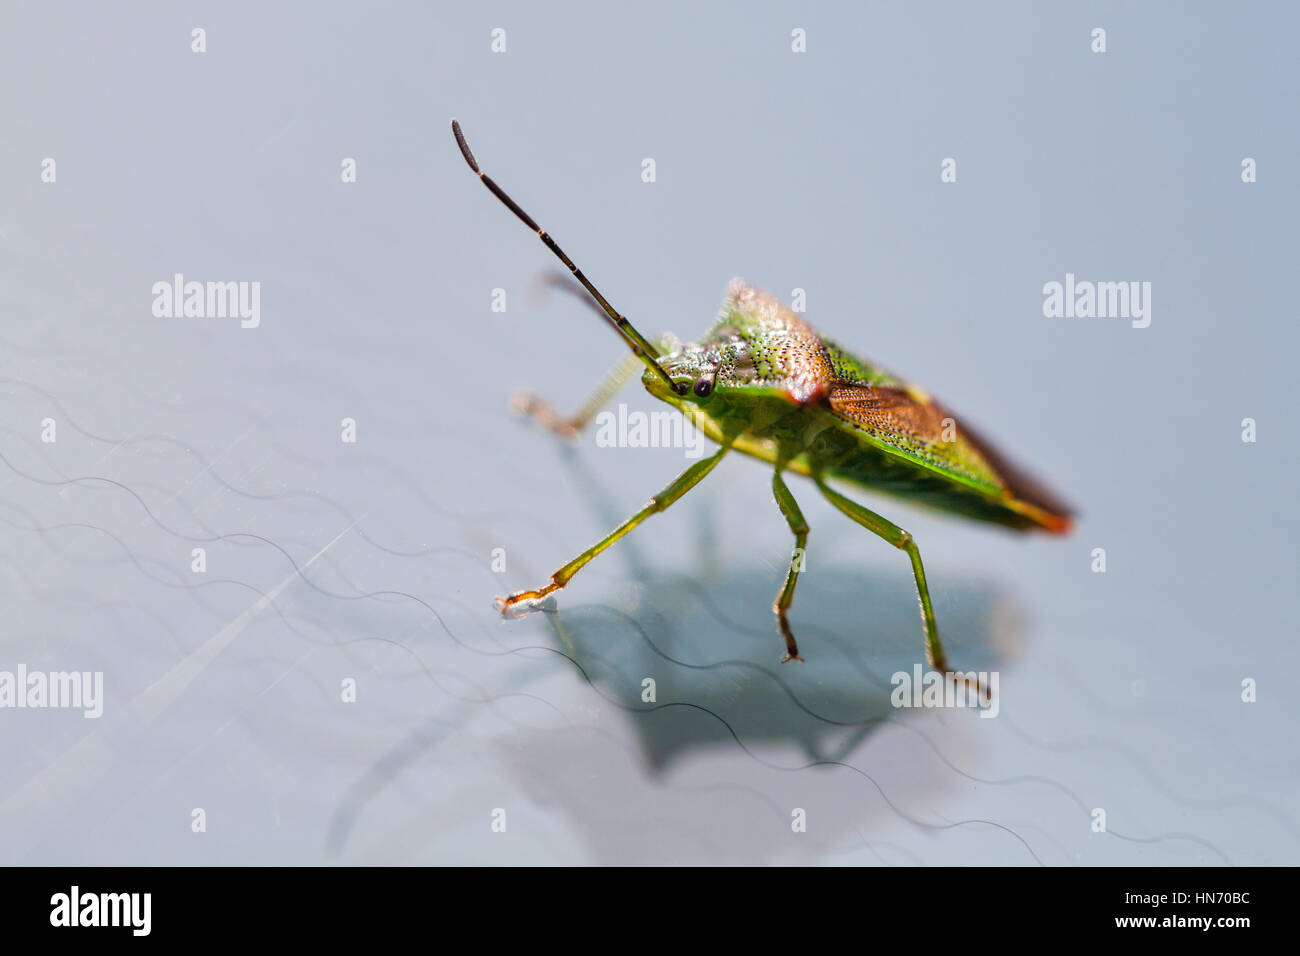 Une macro close up sho ofA green shield bugs insectes se sont installés sur un pare-brise de voiture Banque D'Images